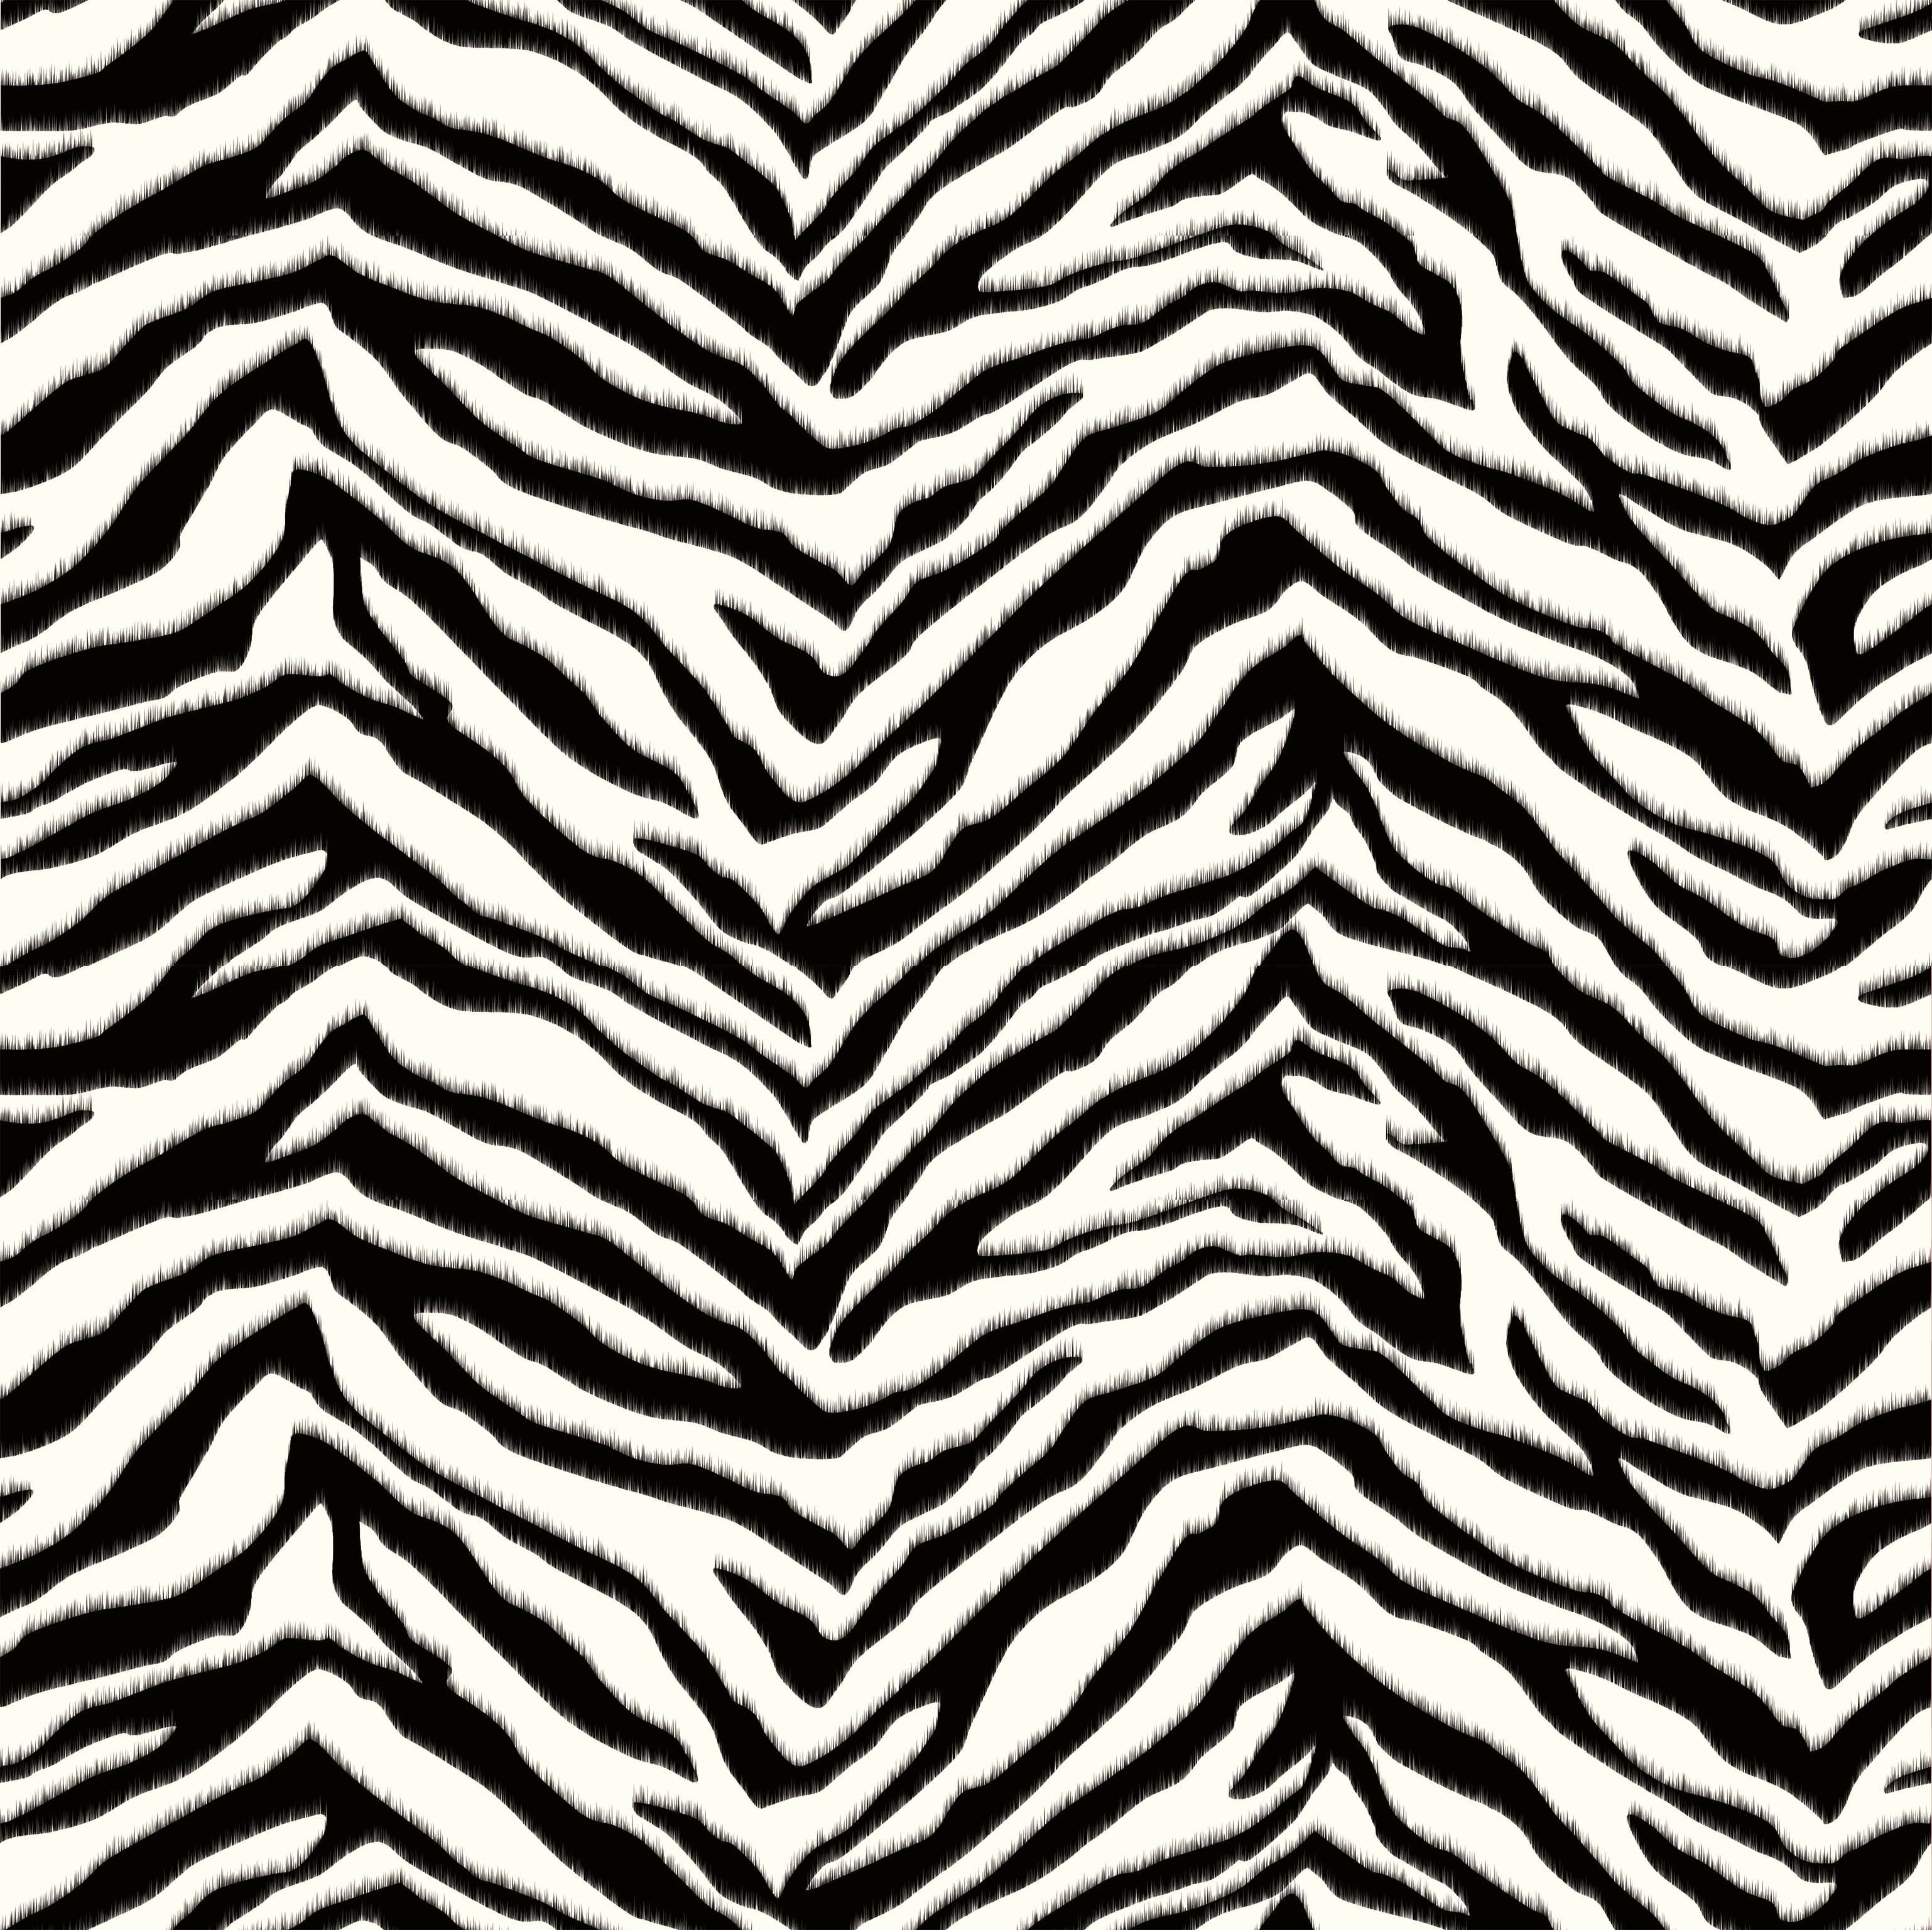 World Menagerie Malika 16.5' x 20.5'' Zebra Print Wallpaper & Reviews